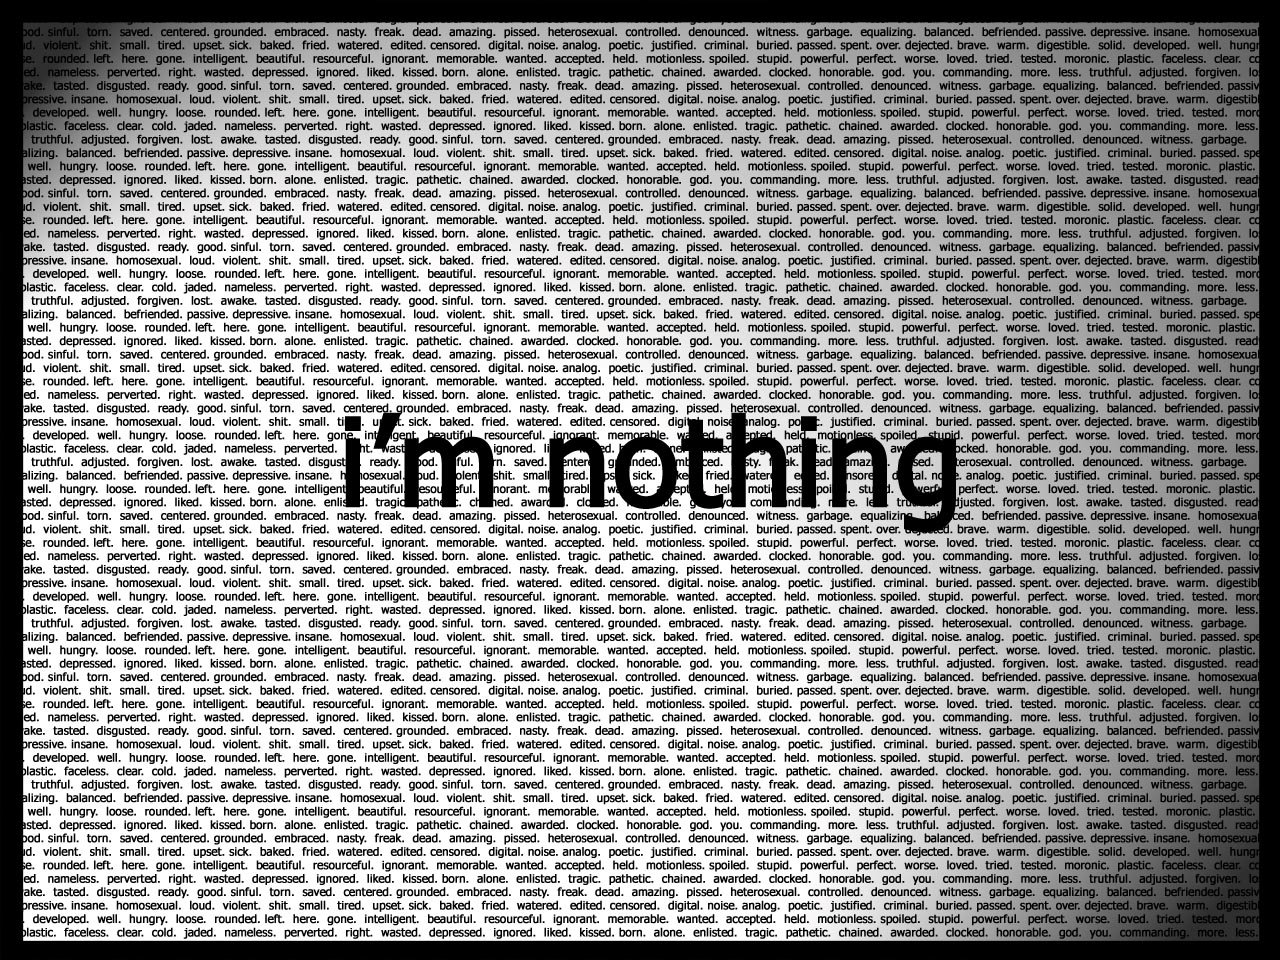 [im_nothing.jpg]